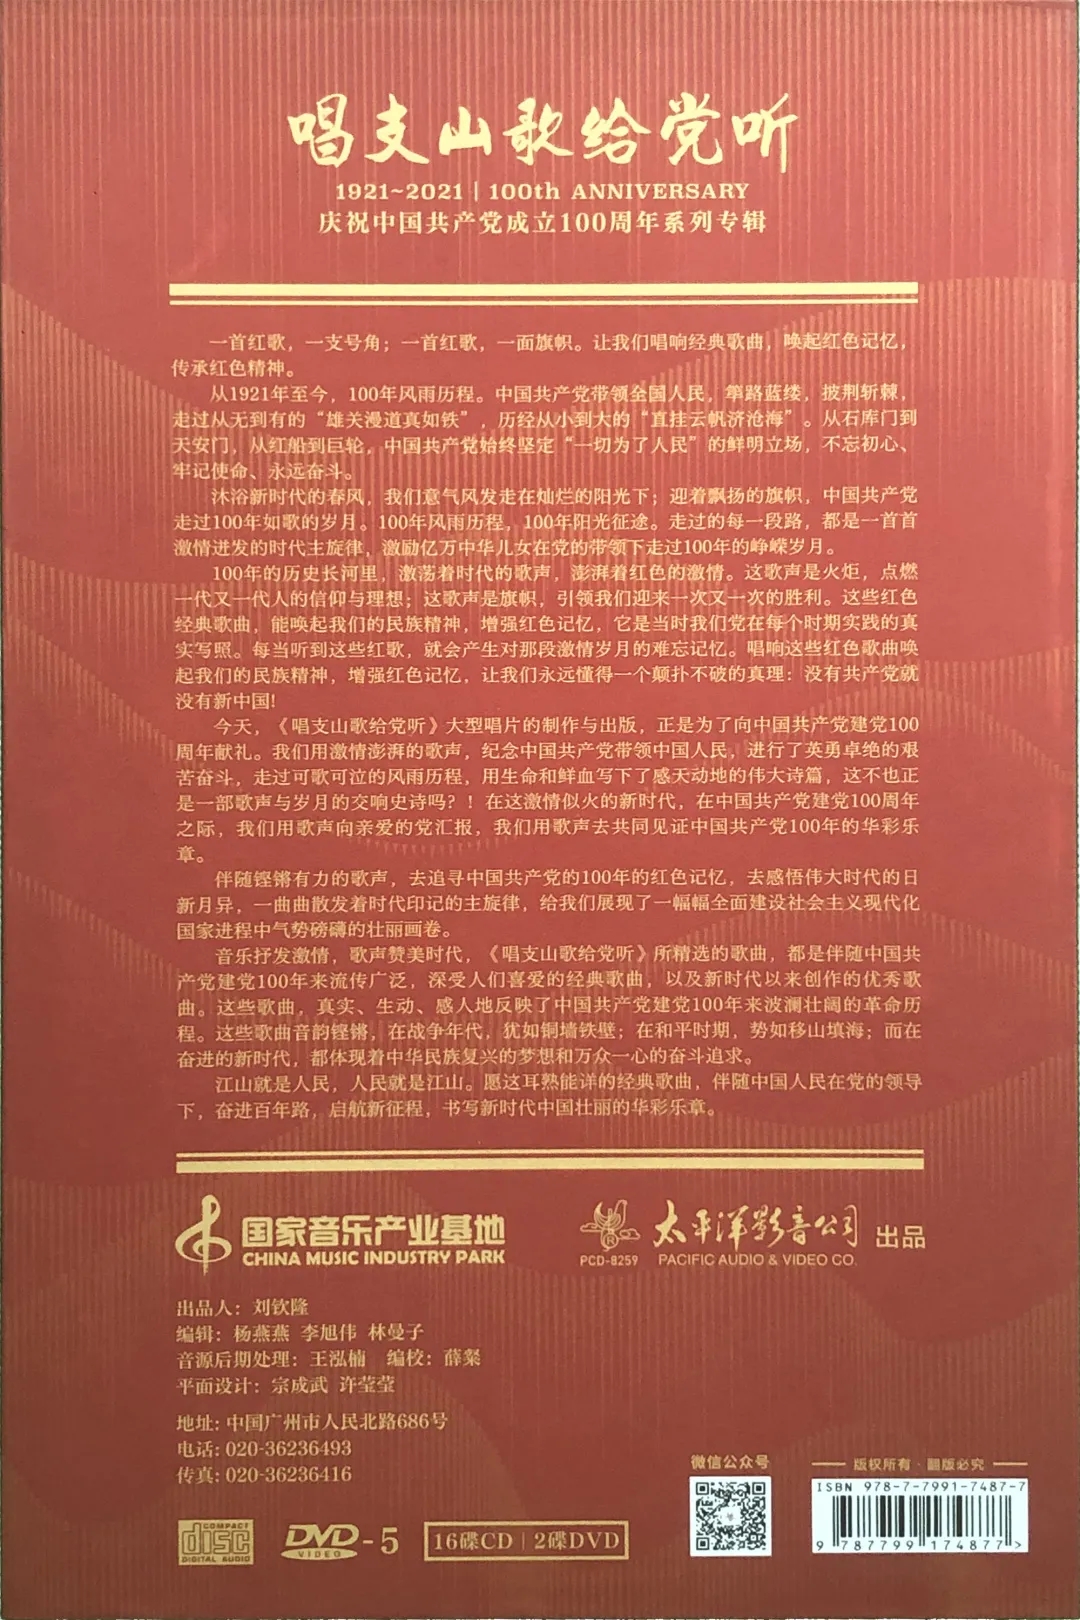 《红旗红》《百年之光》入选庆祝中国共产党成立100周年系列专辑